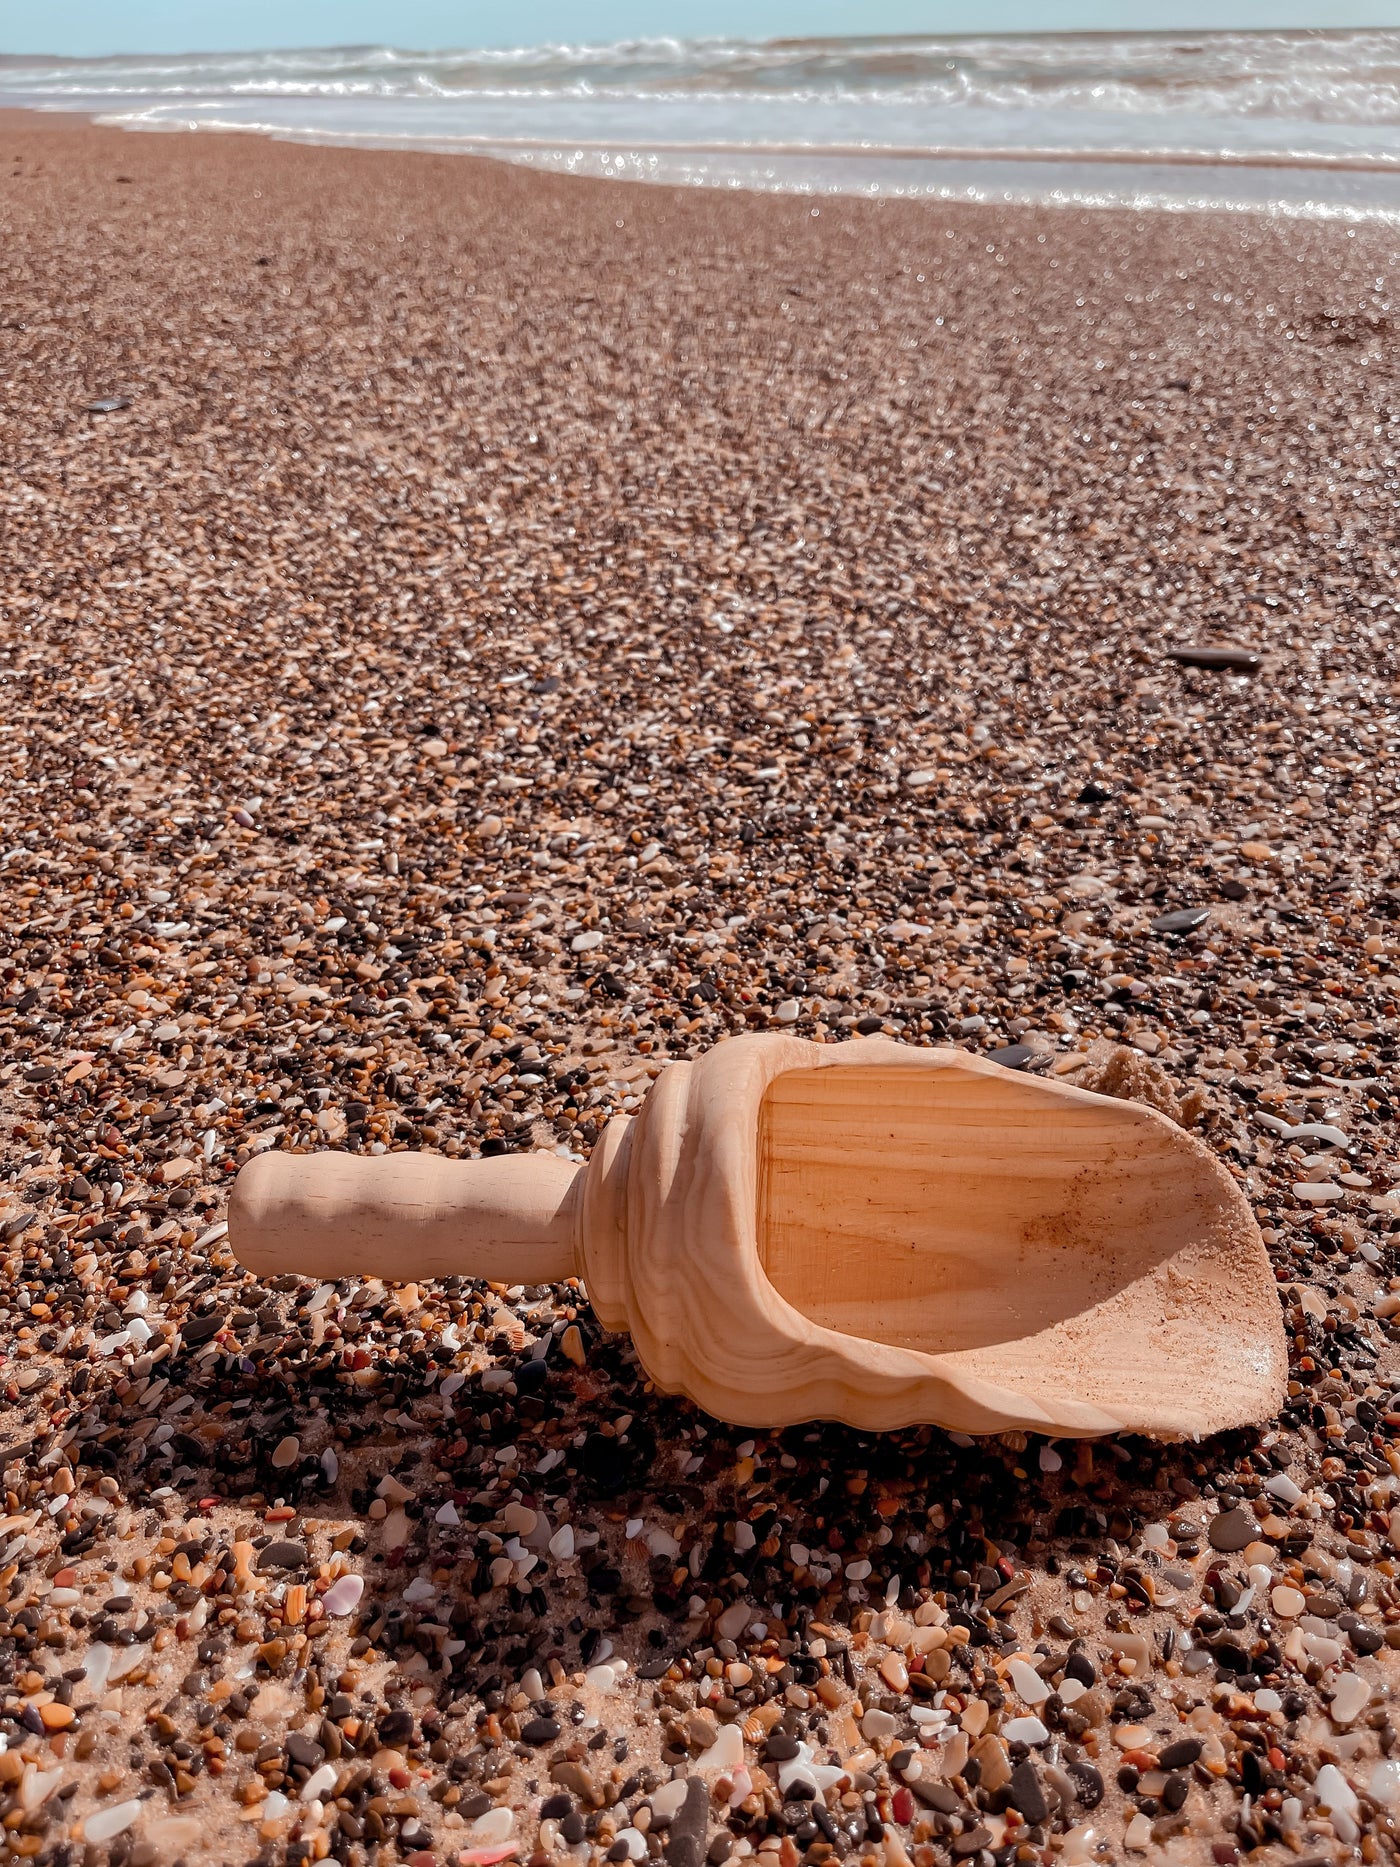 Large Wooden Vintage Style Shovel